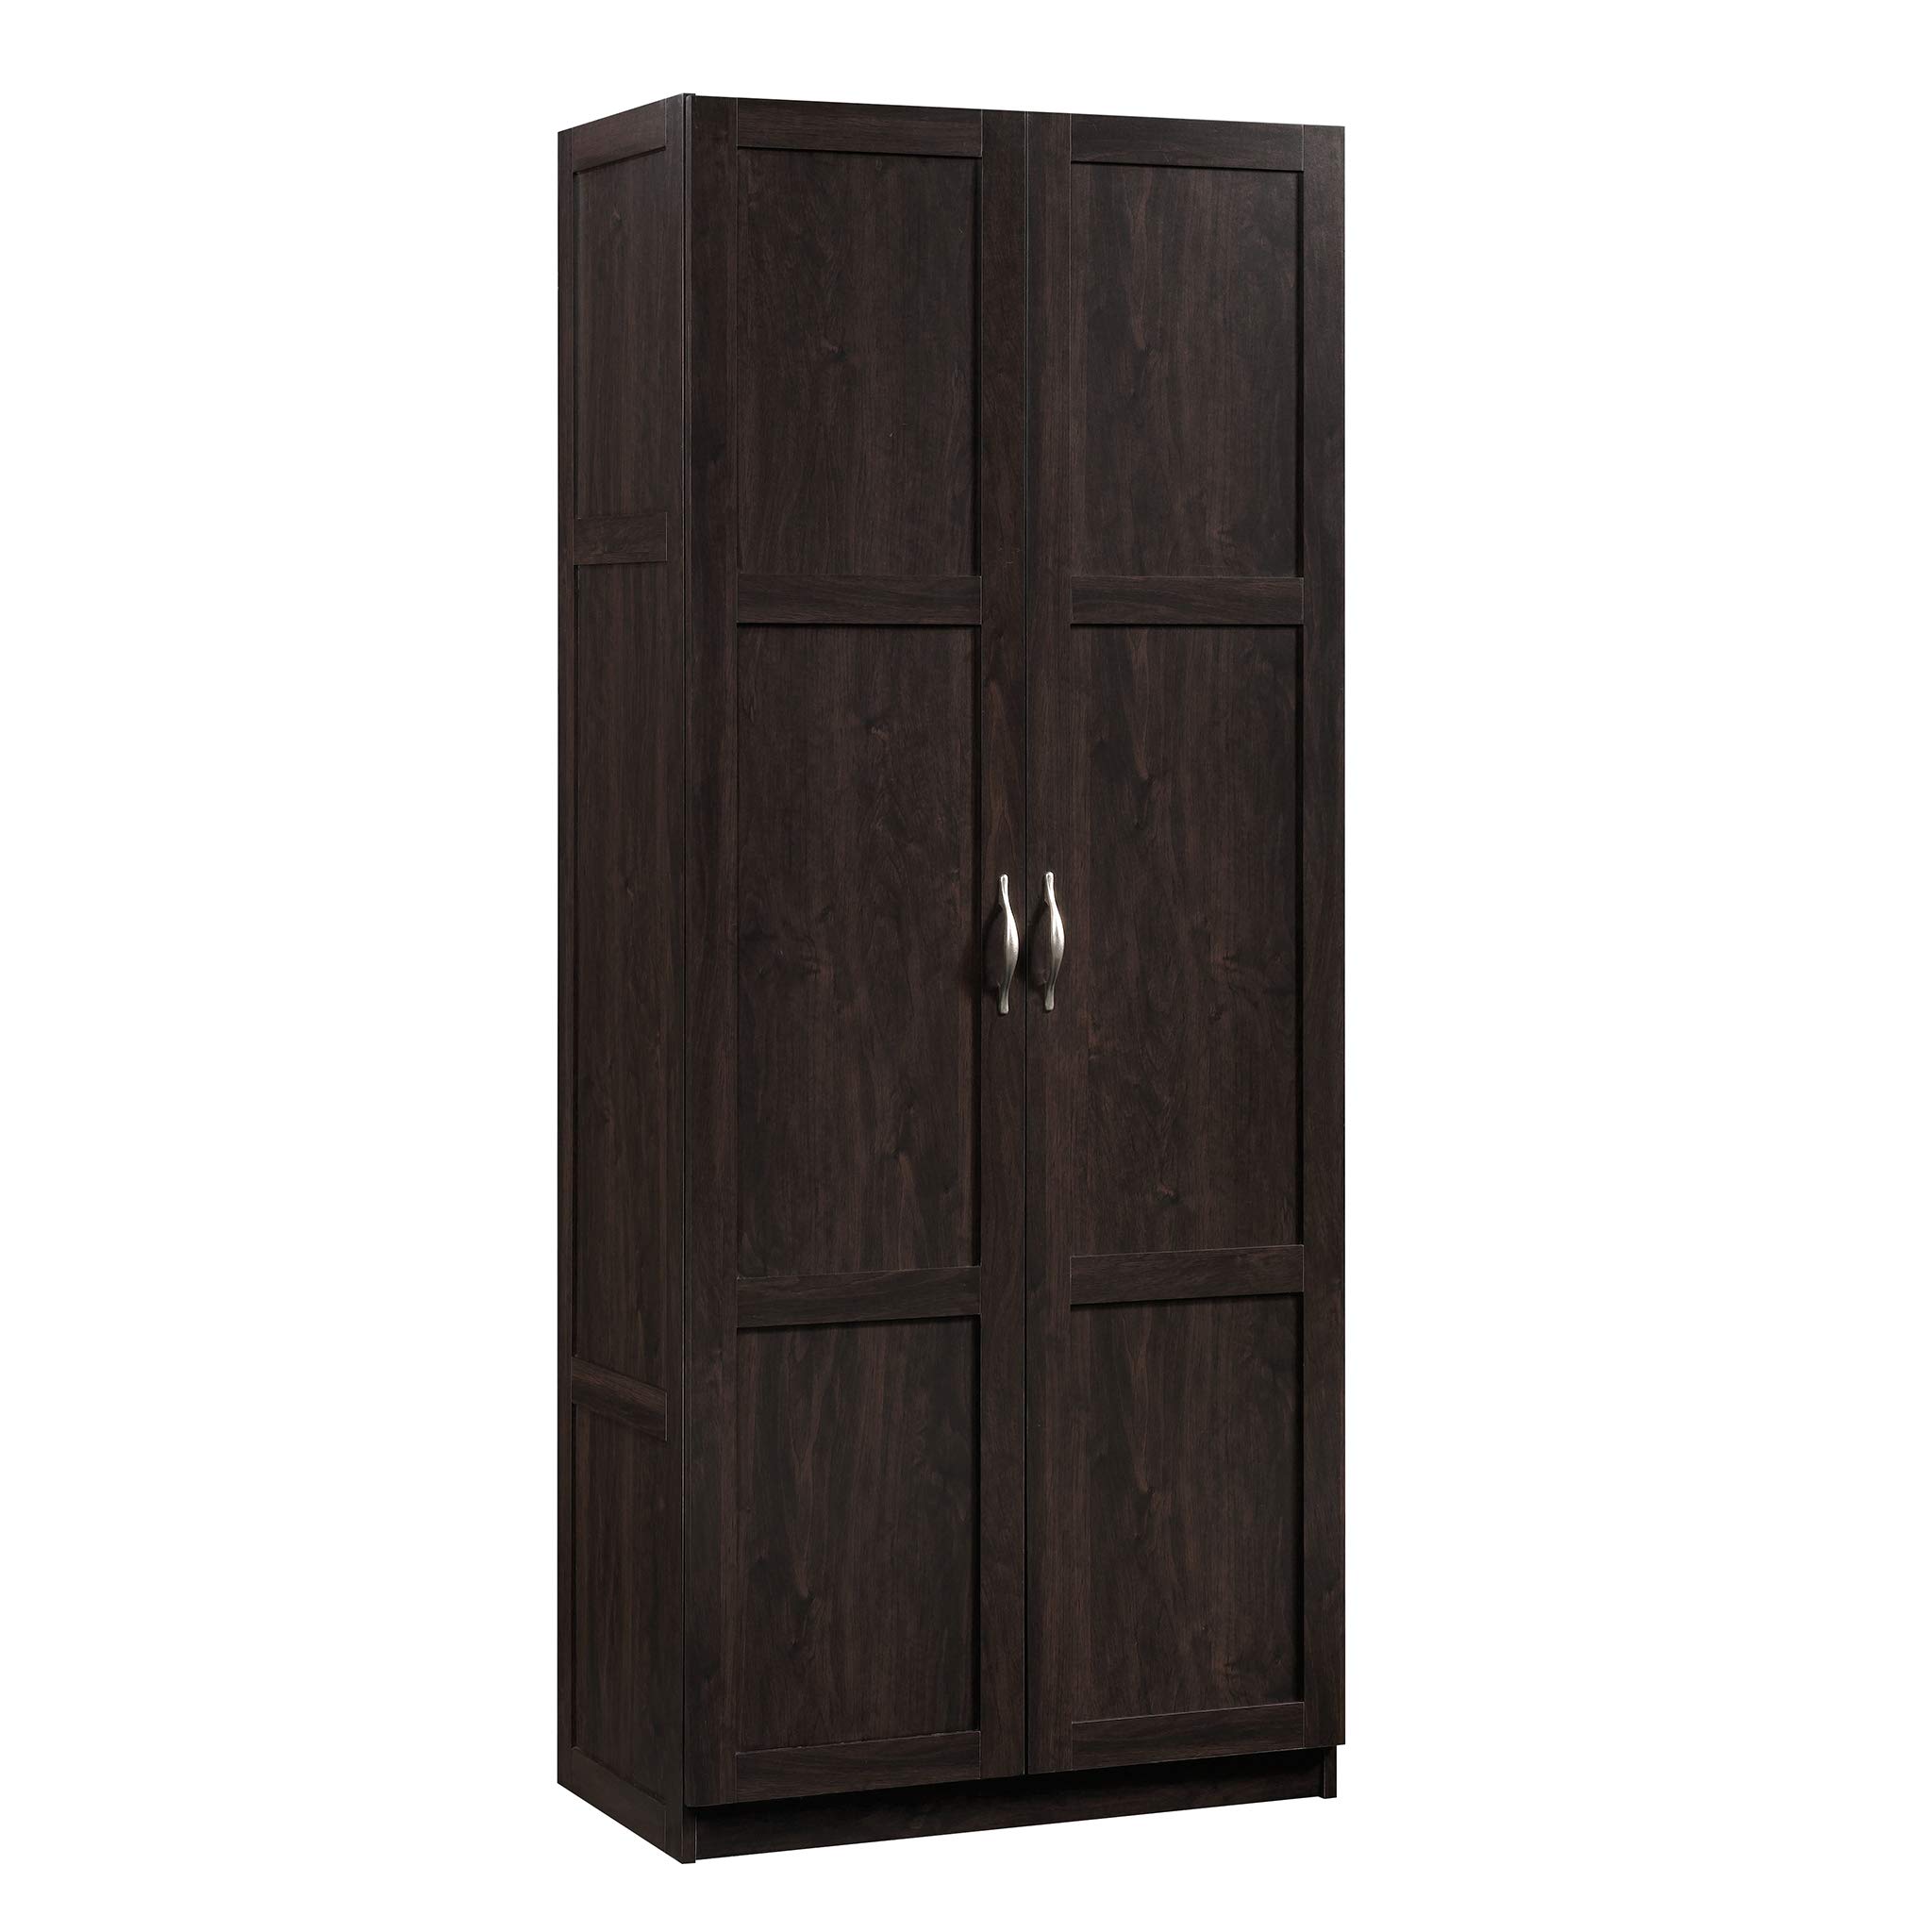 Sauder 419496 Miscellaneous Storage Storage Cabinet, 29.61 